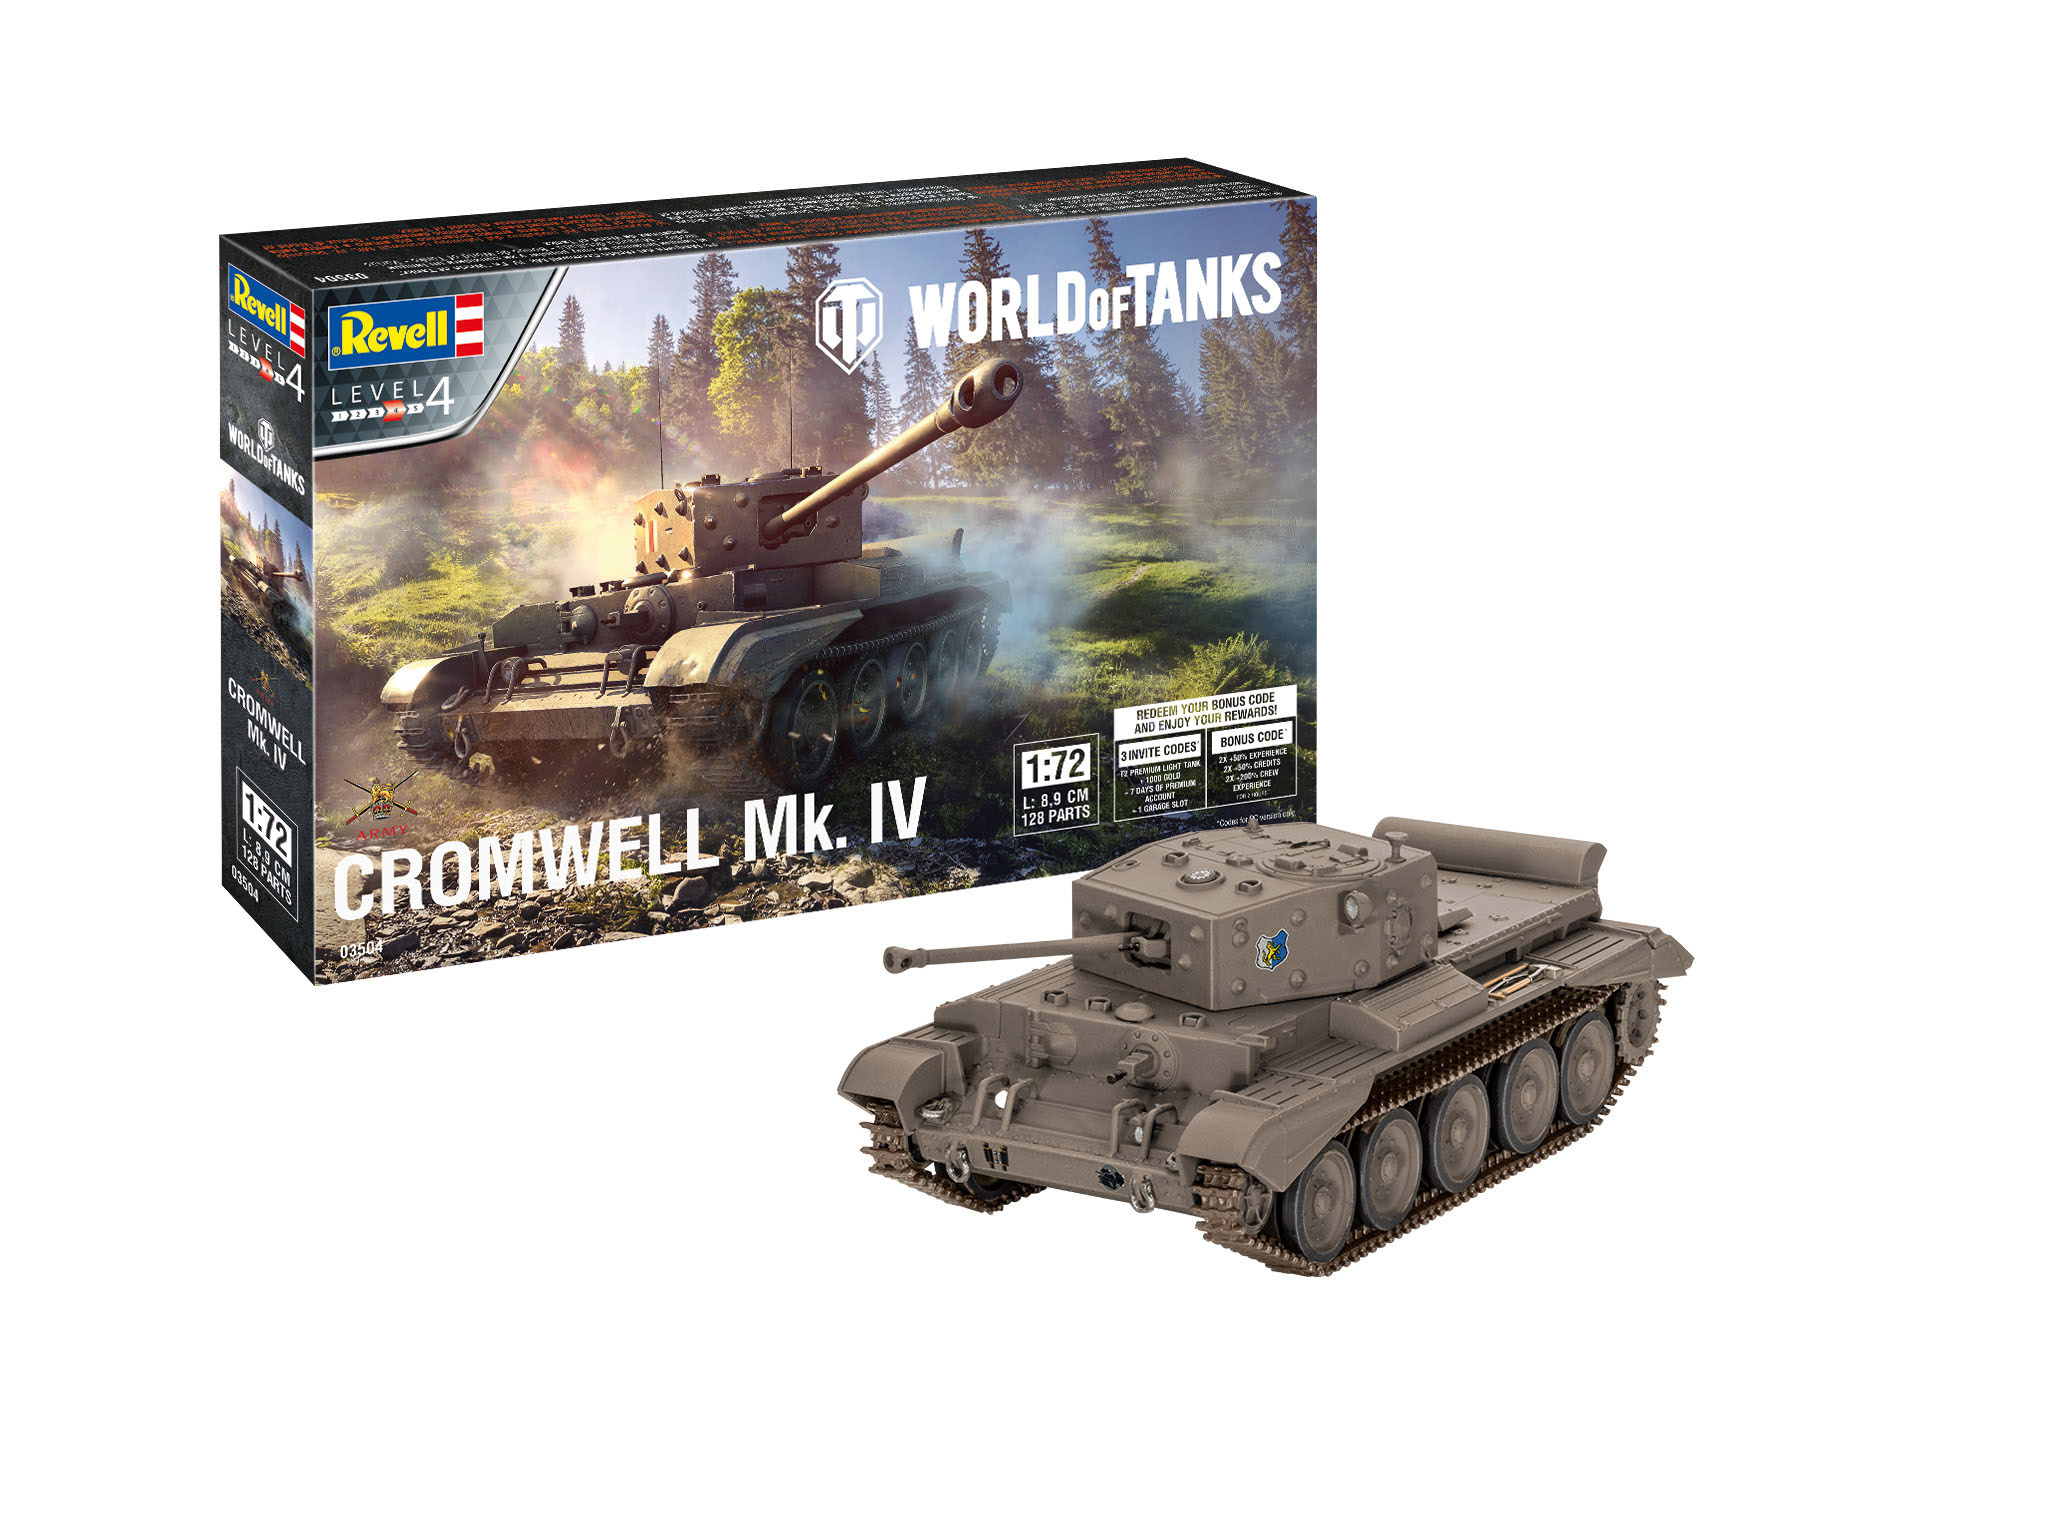 Revell Cromwell Mk. IV "World of Tanks" in 1:72 bouwpakket